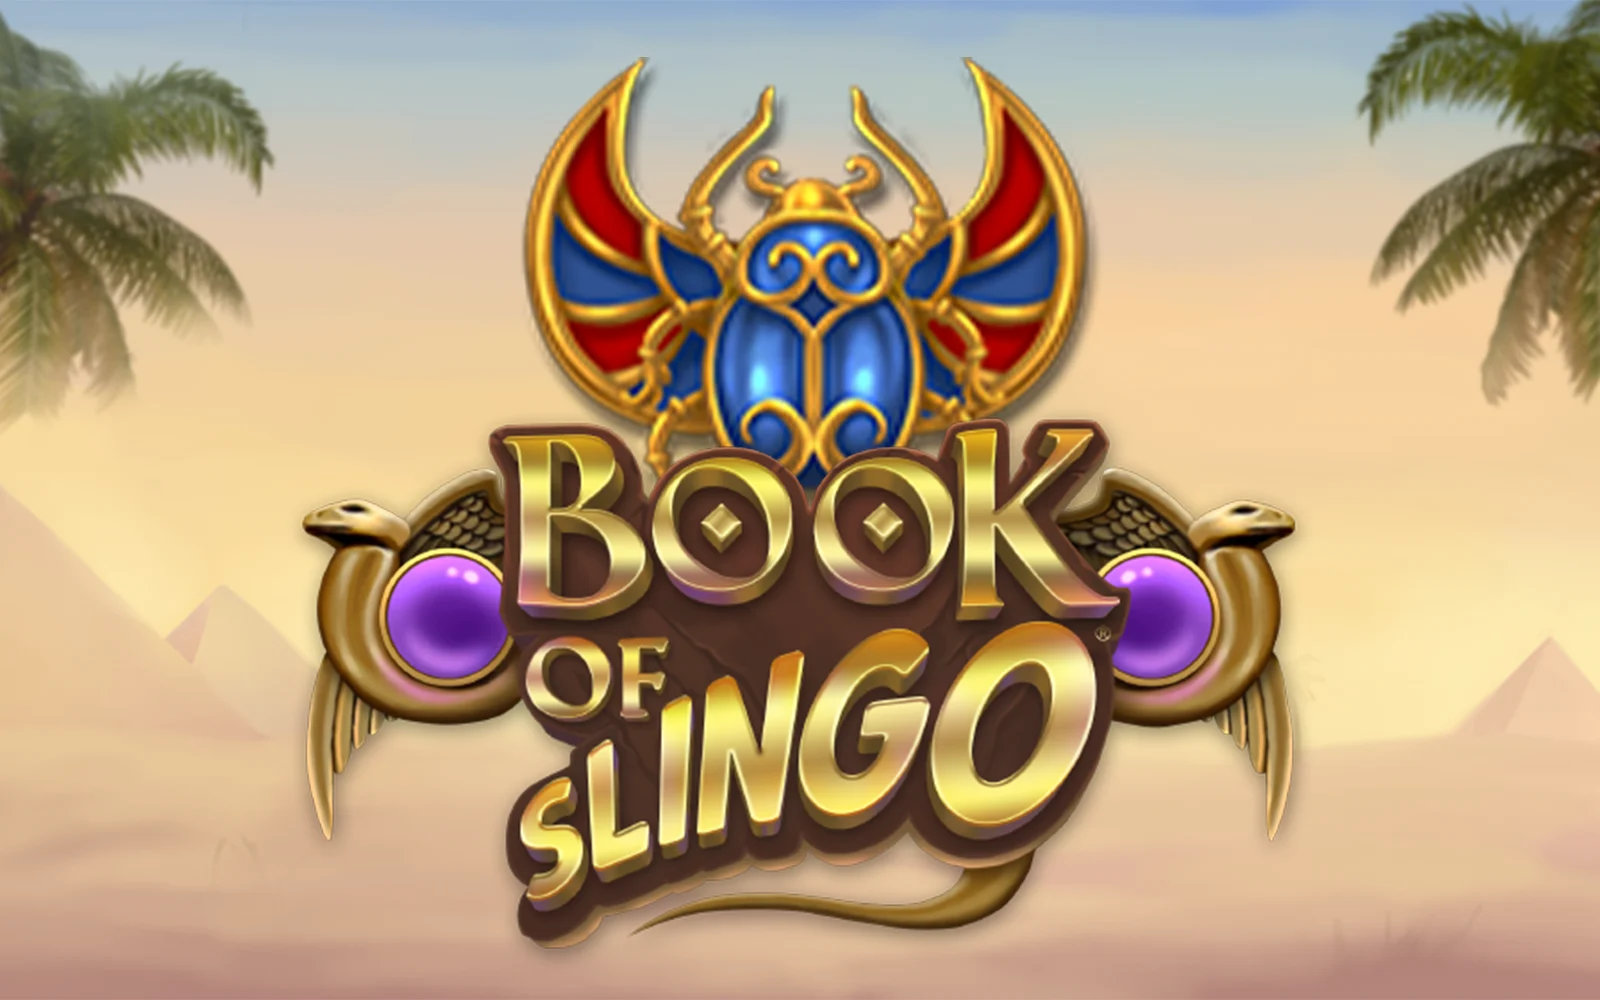 Speel Book of Slingo op Starcasino.be online casino